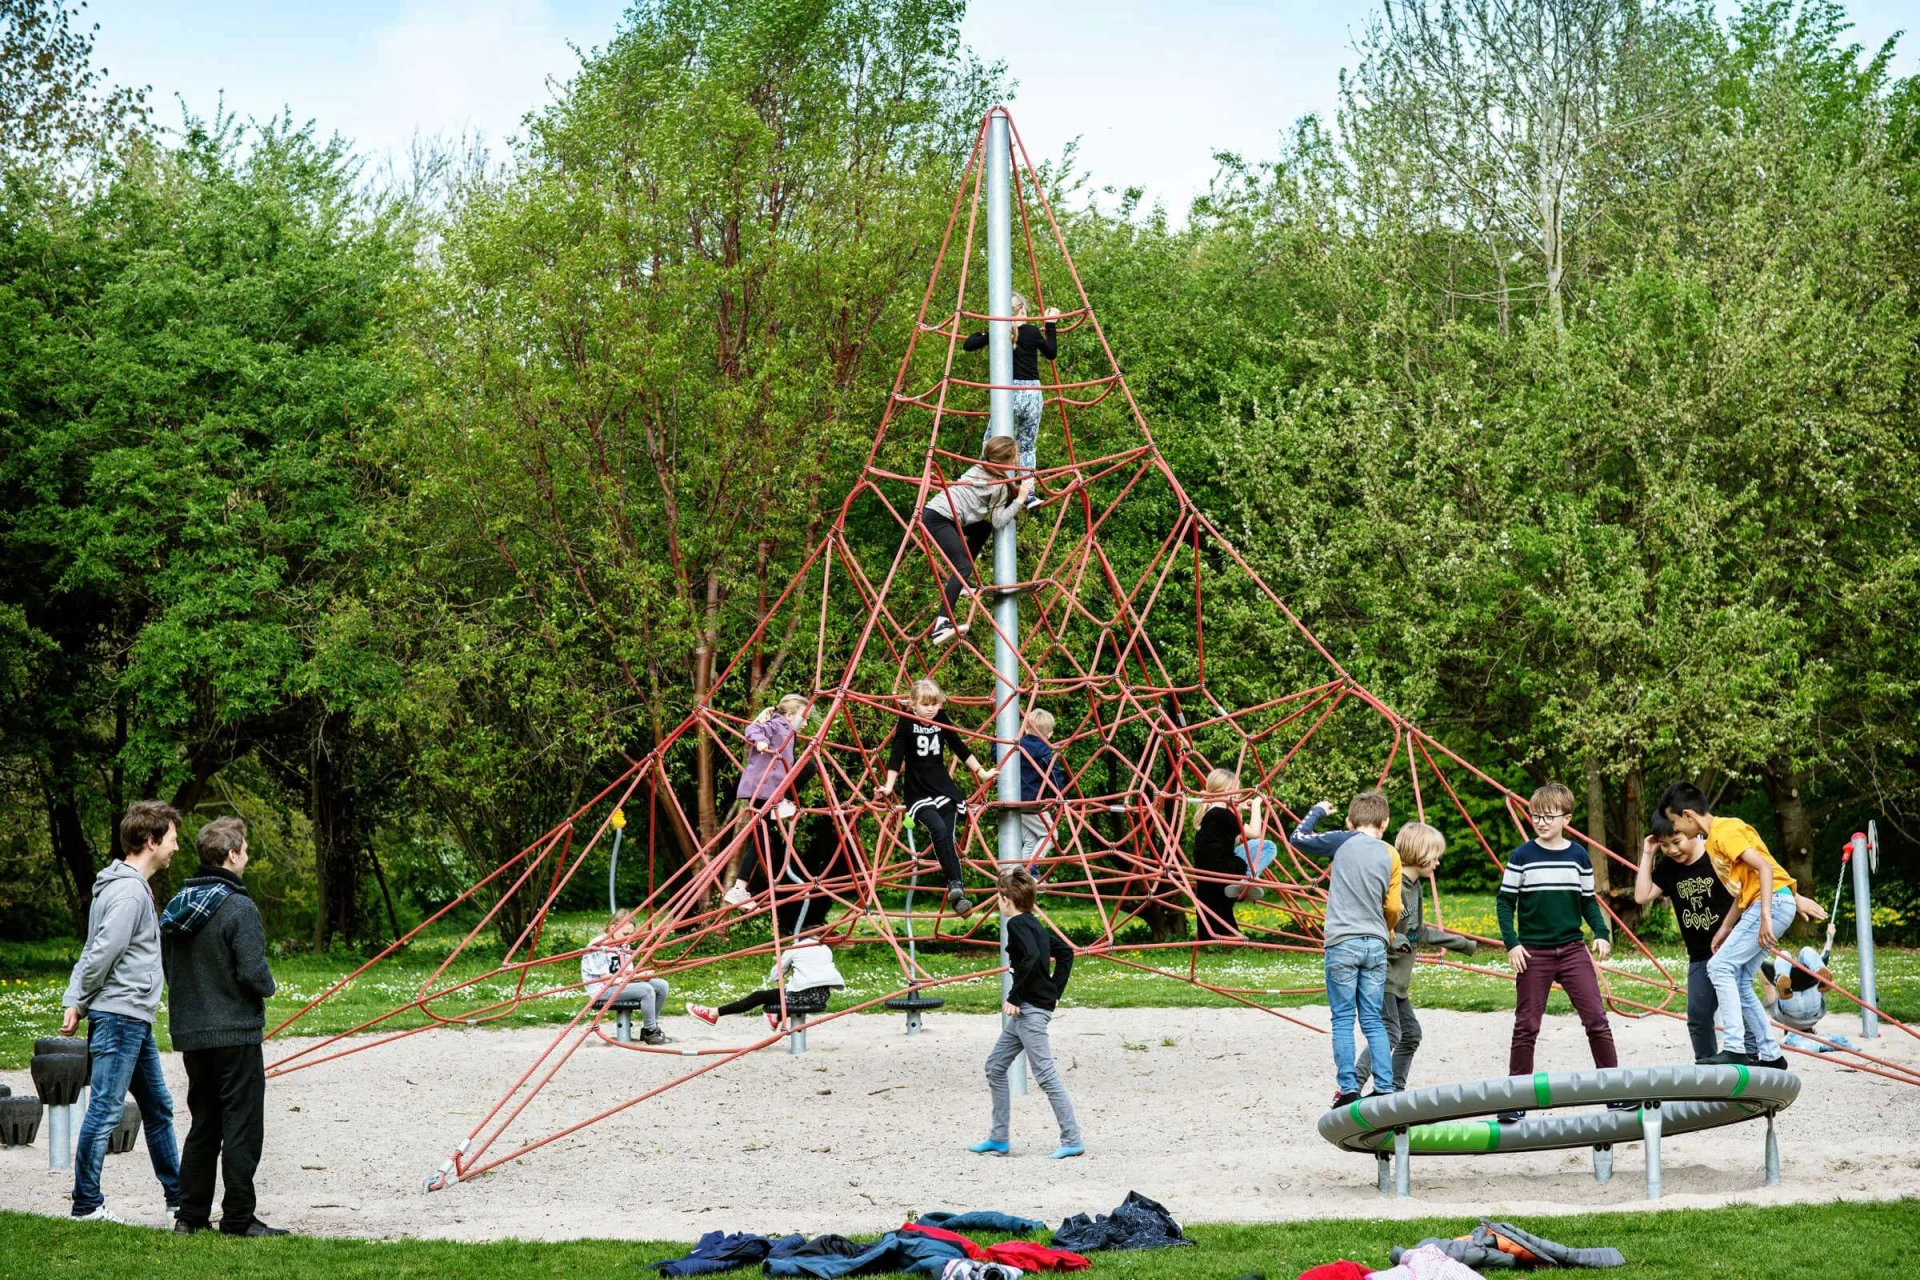 eine Gruppe von Personen, die auf einem Spielplatz auf einem pyramidenförmigen Klettergerüst spielen